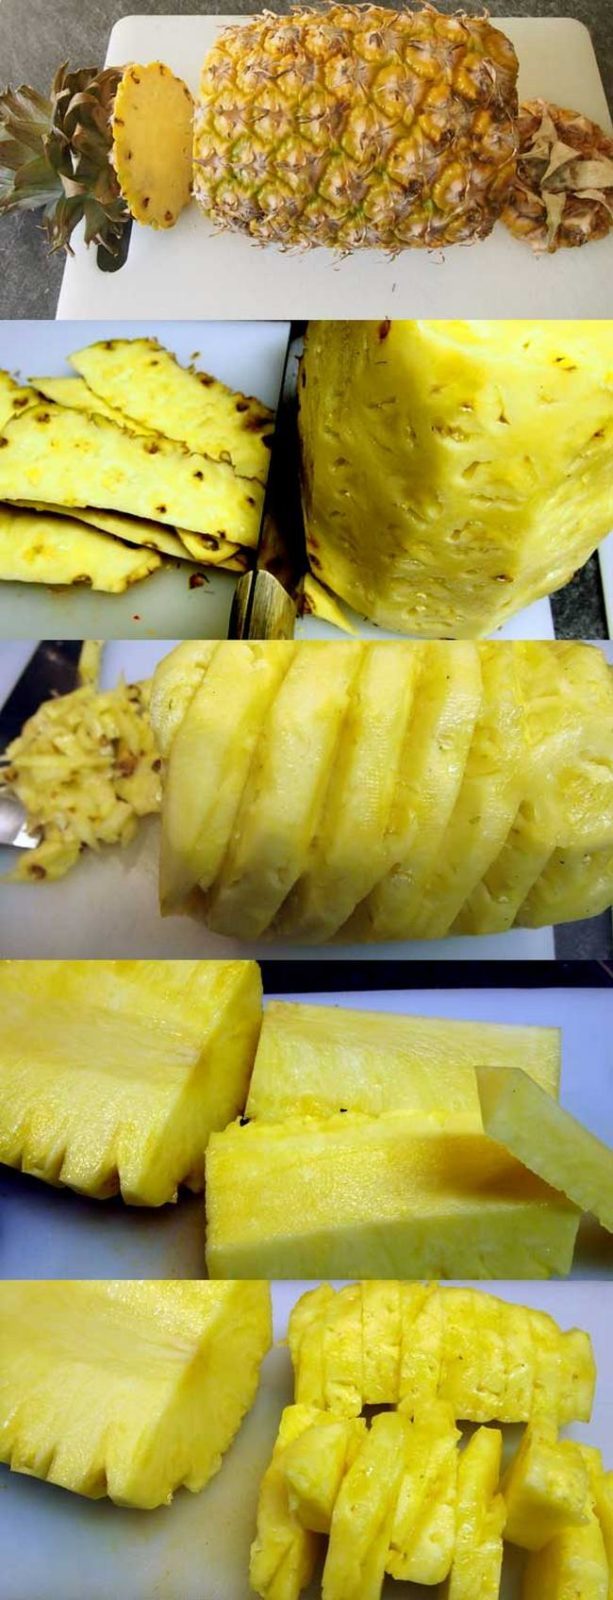 kak-pravilno-chistit-ananas (6)